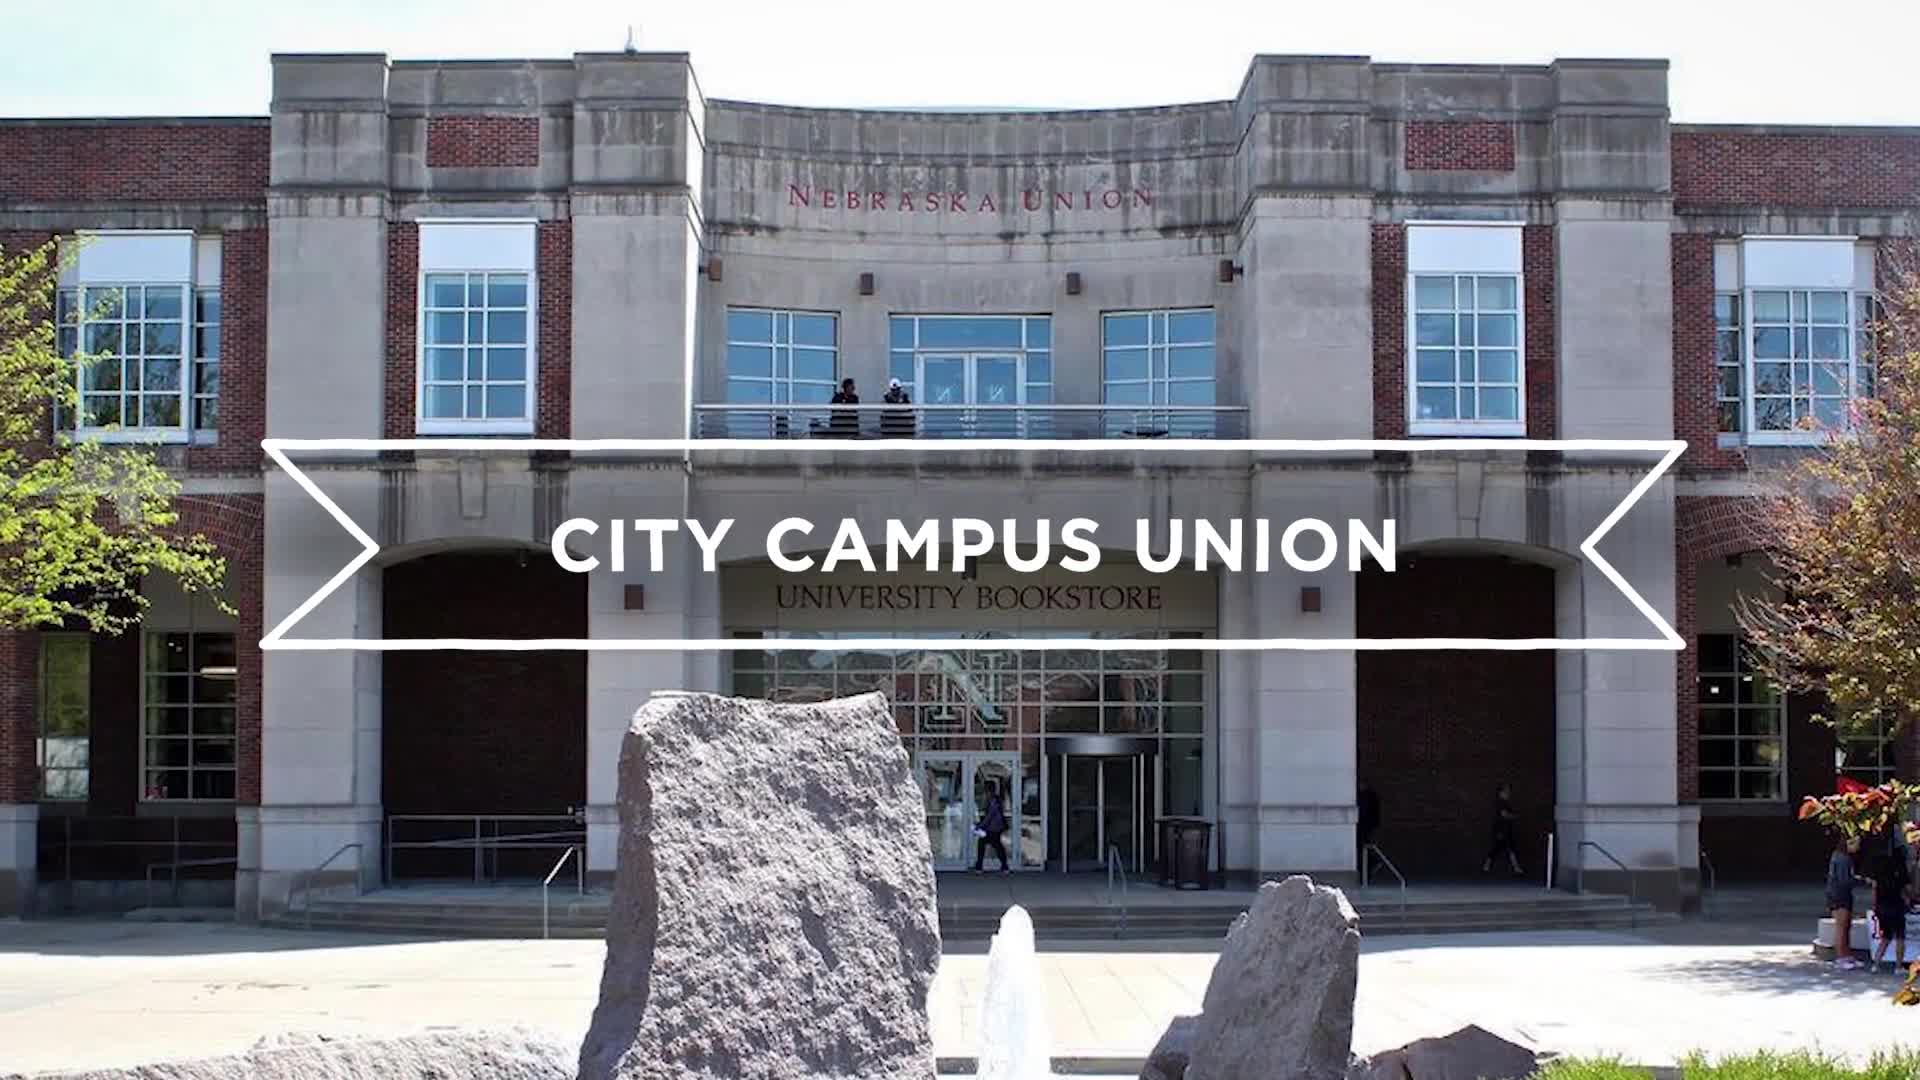 Campus Tours–City Campus Union